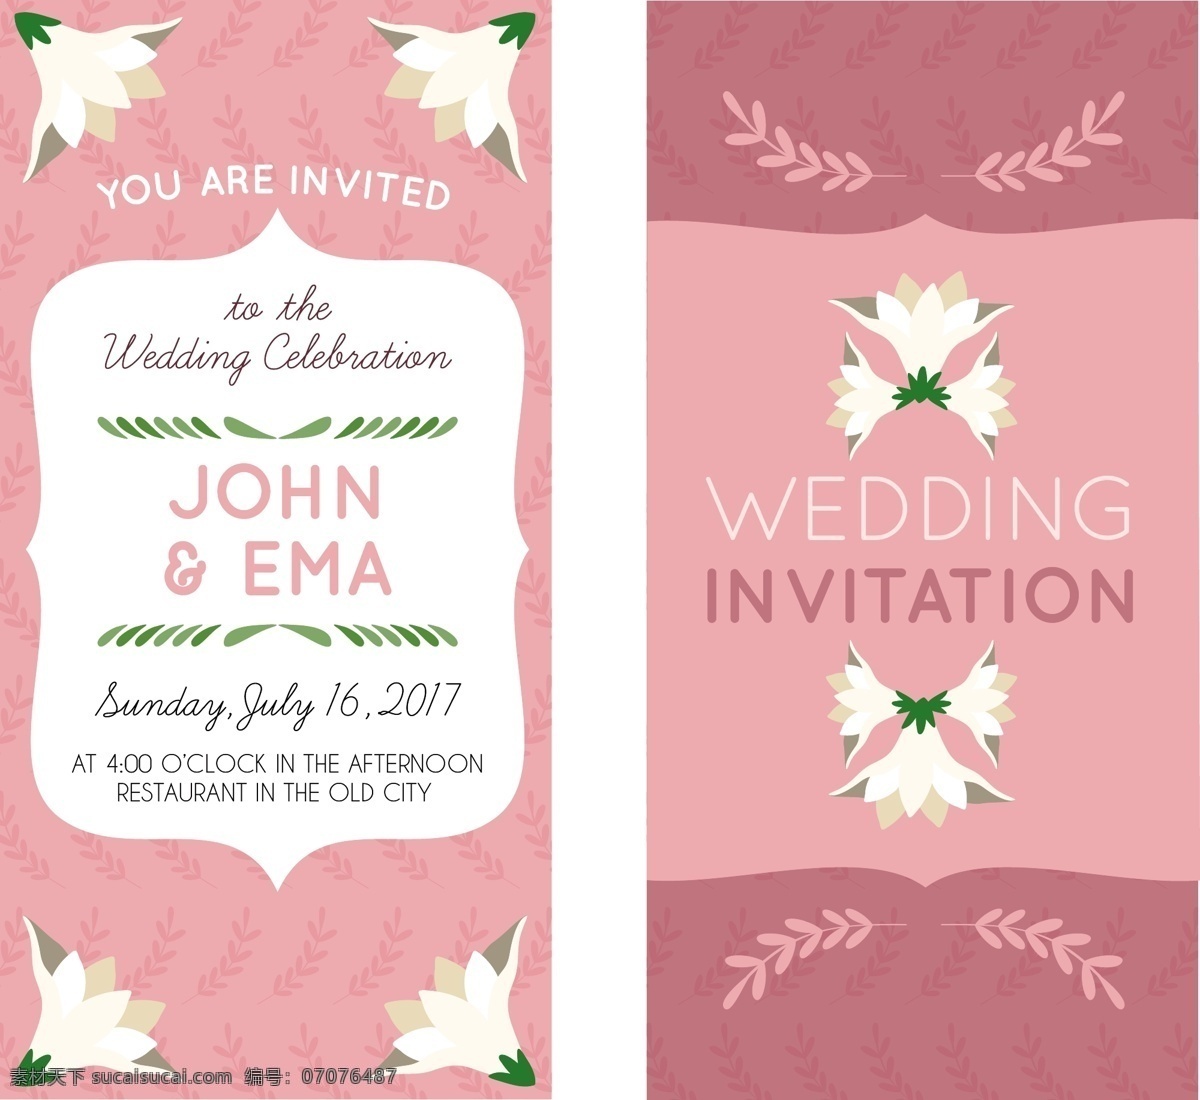 粉红色 装饰 花朵 婚礼 邀请 卡 粉红色的 装饰花朵 婚礼邀请卡